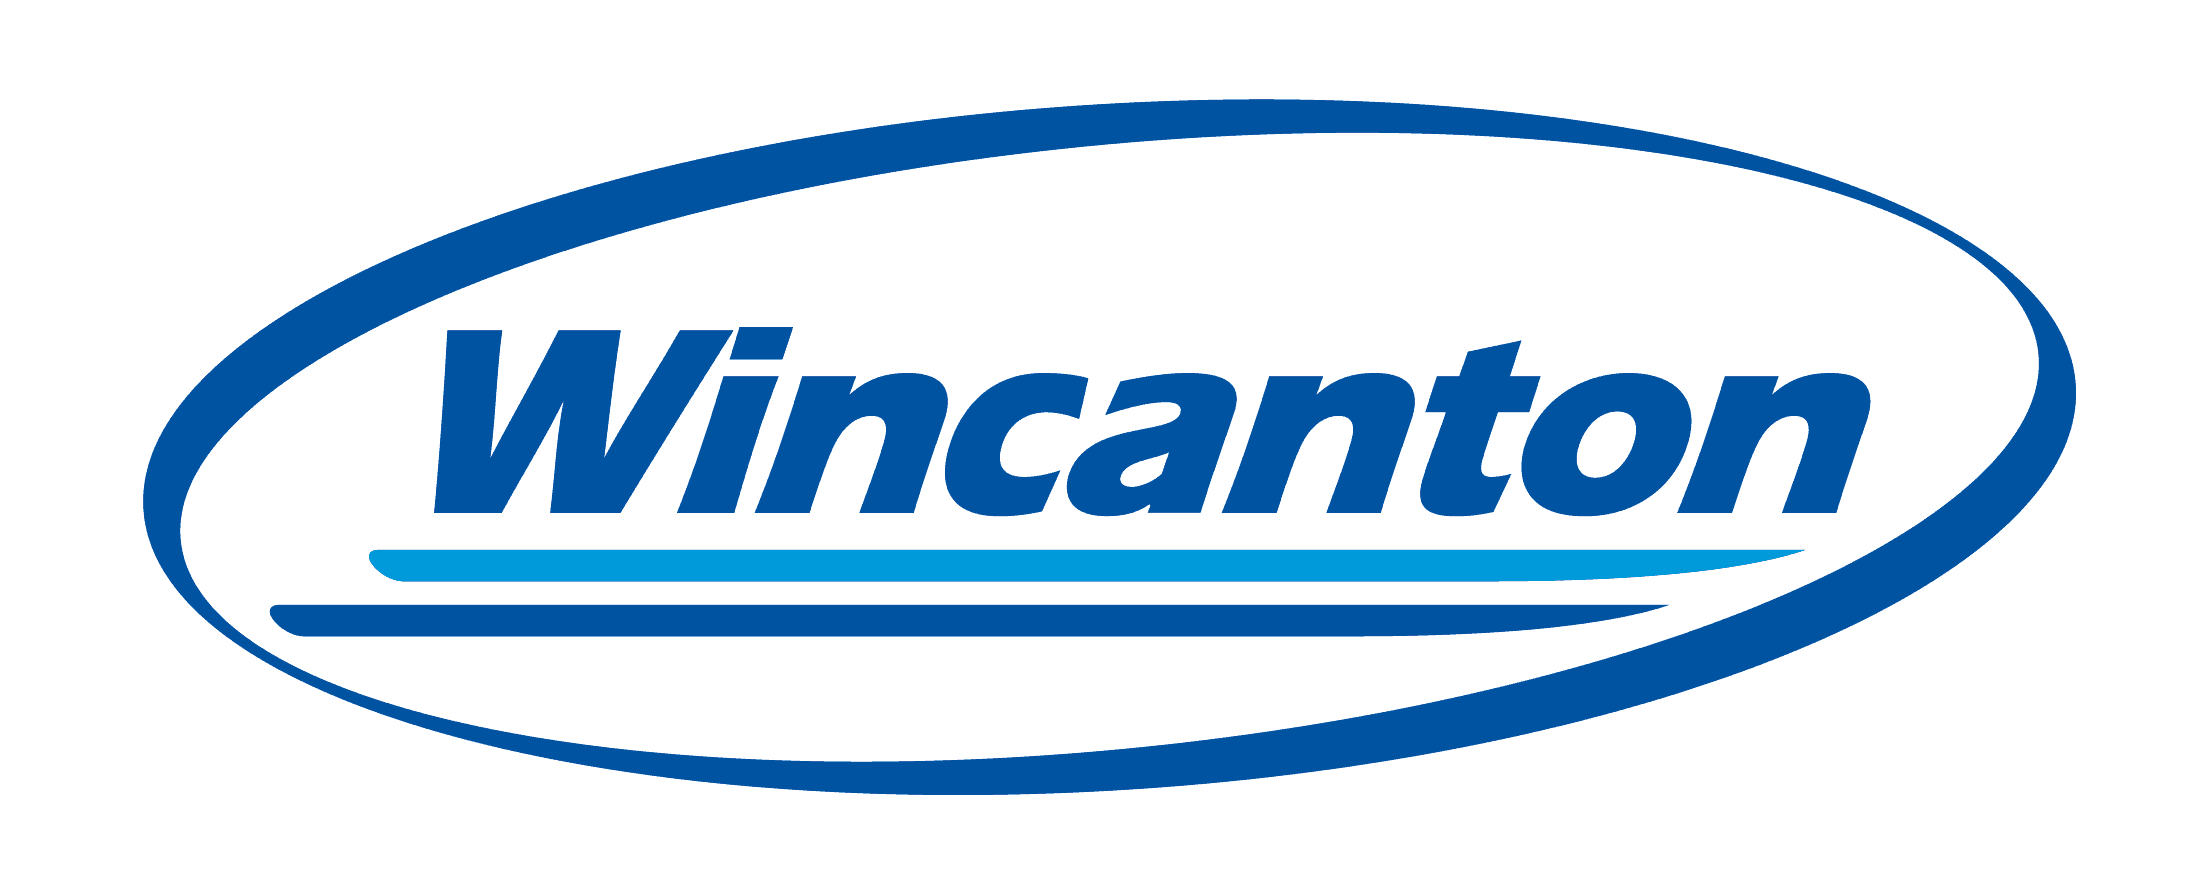 wincanton plc logo